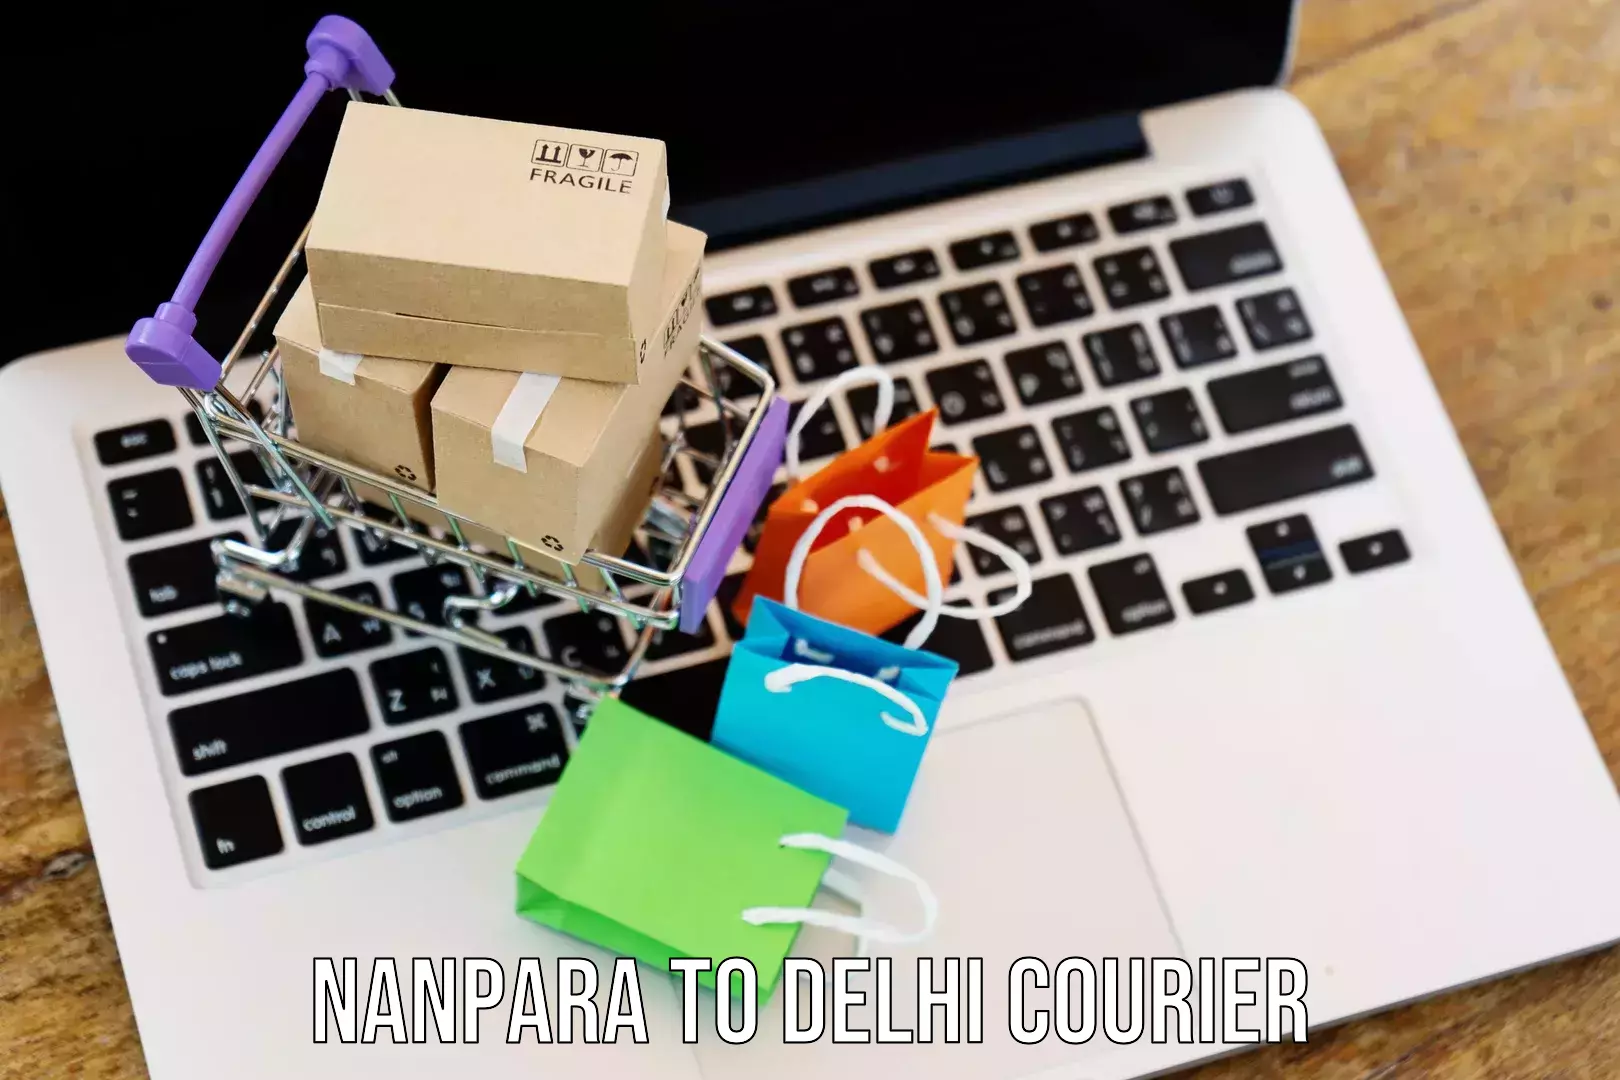 Express delivery network Nanpara to Subhash Nagar